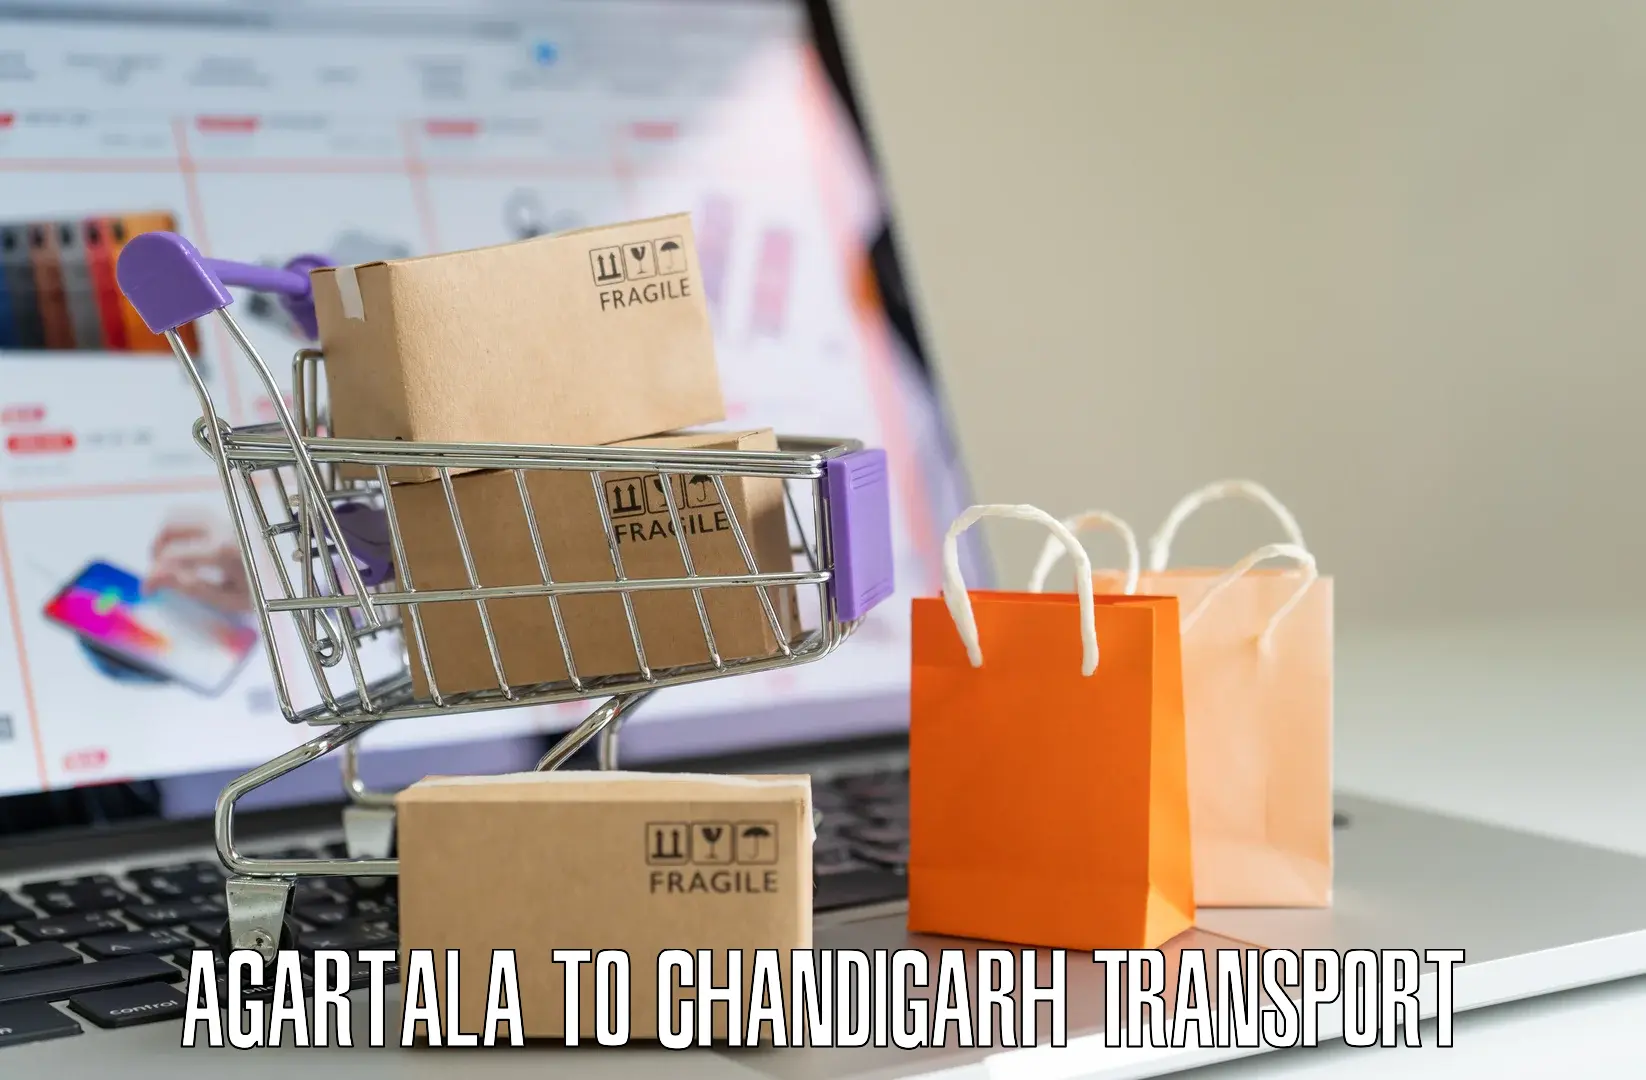 Online transport service Agartala to Chandigarh